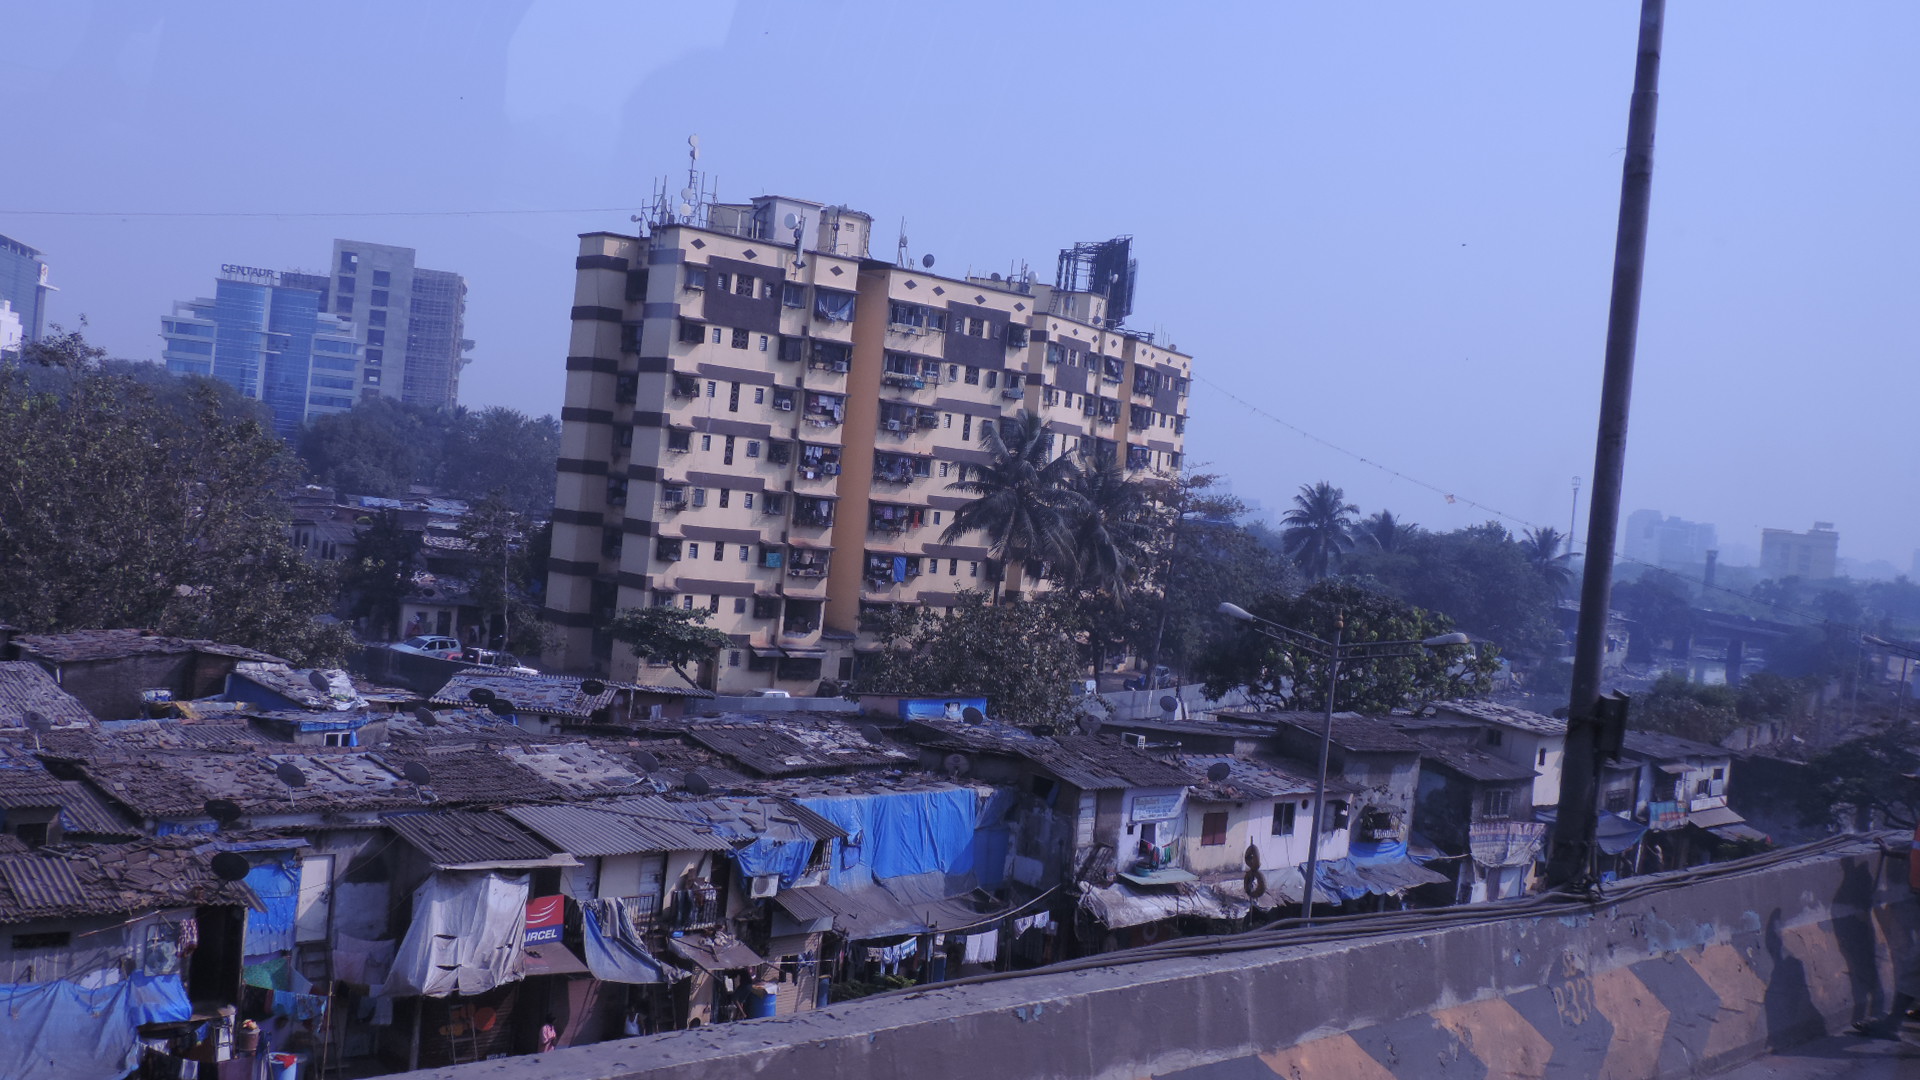 Mumbai - city of dreams